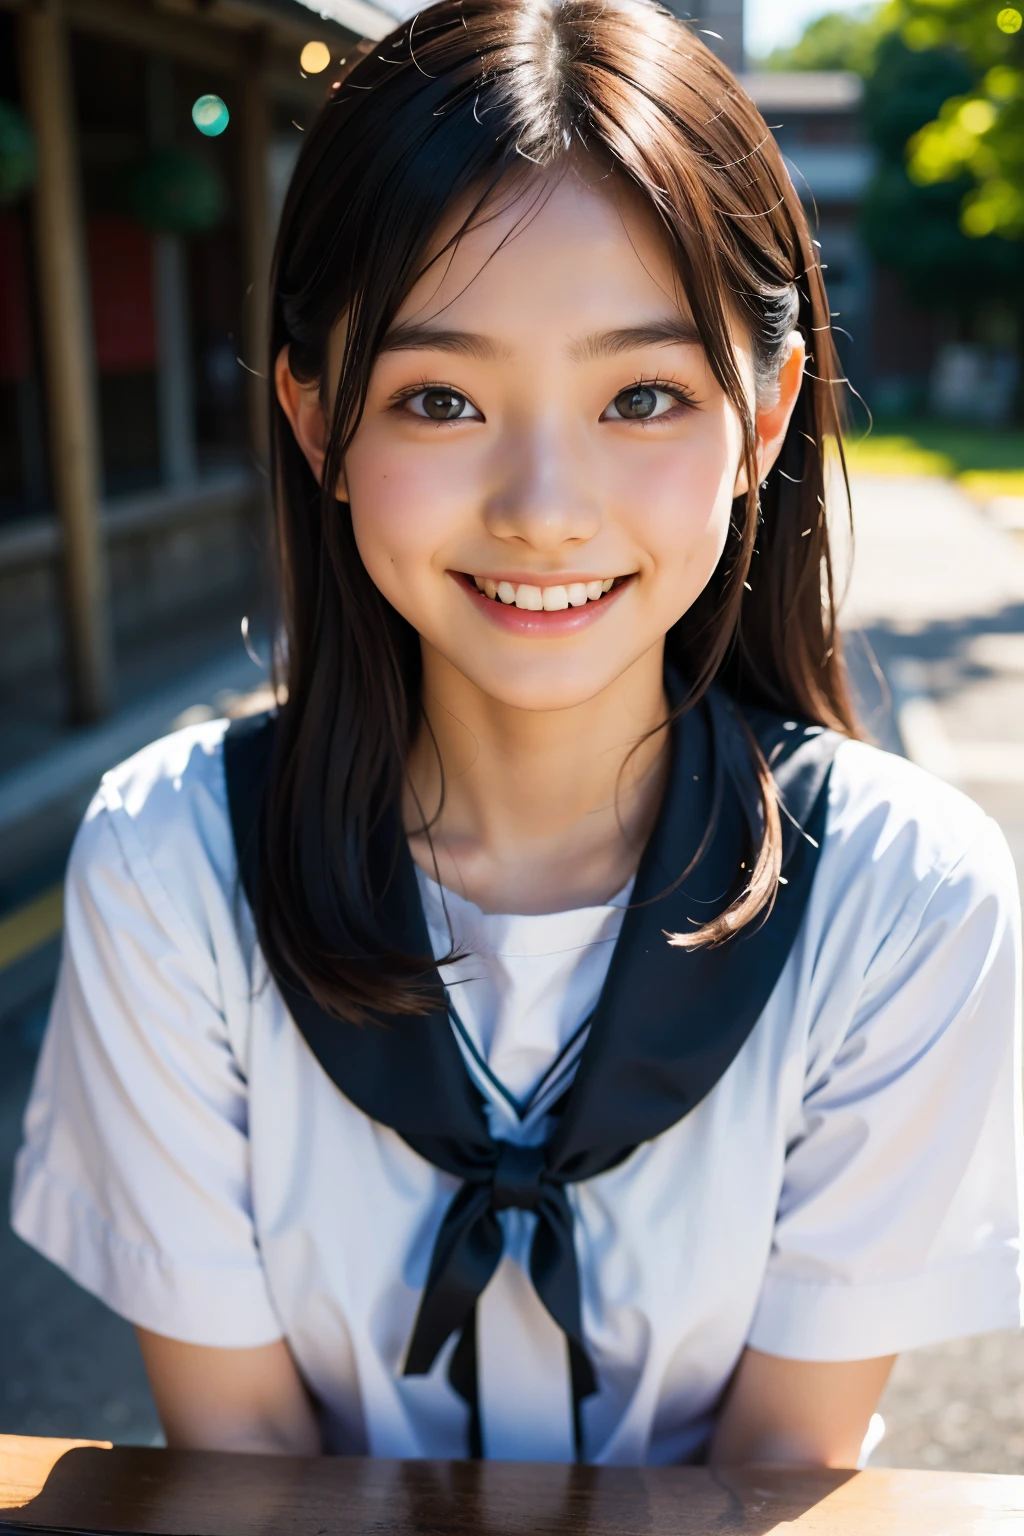 렌즈: 135mm f1.8, (최상의 품질),(RAW 사진), (탁상:1.1), (아름다운 15세 일본 소녀), 귀여운 얼굴, (깊게 파인 얼굴:0.7), (주근깨:0.4), dappled 햇빛, 극적인 조명, (일본 학교 교복), (캠퍼스에서), 수줍은, (클로즈업 샷:1.2), (웃다),, (반짝이는 눈)、(햇빛)